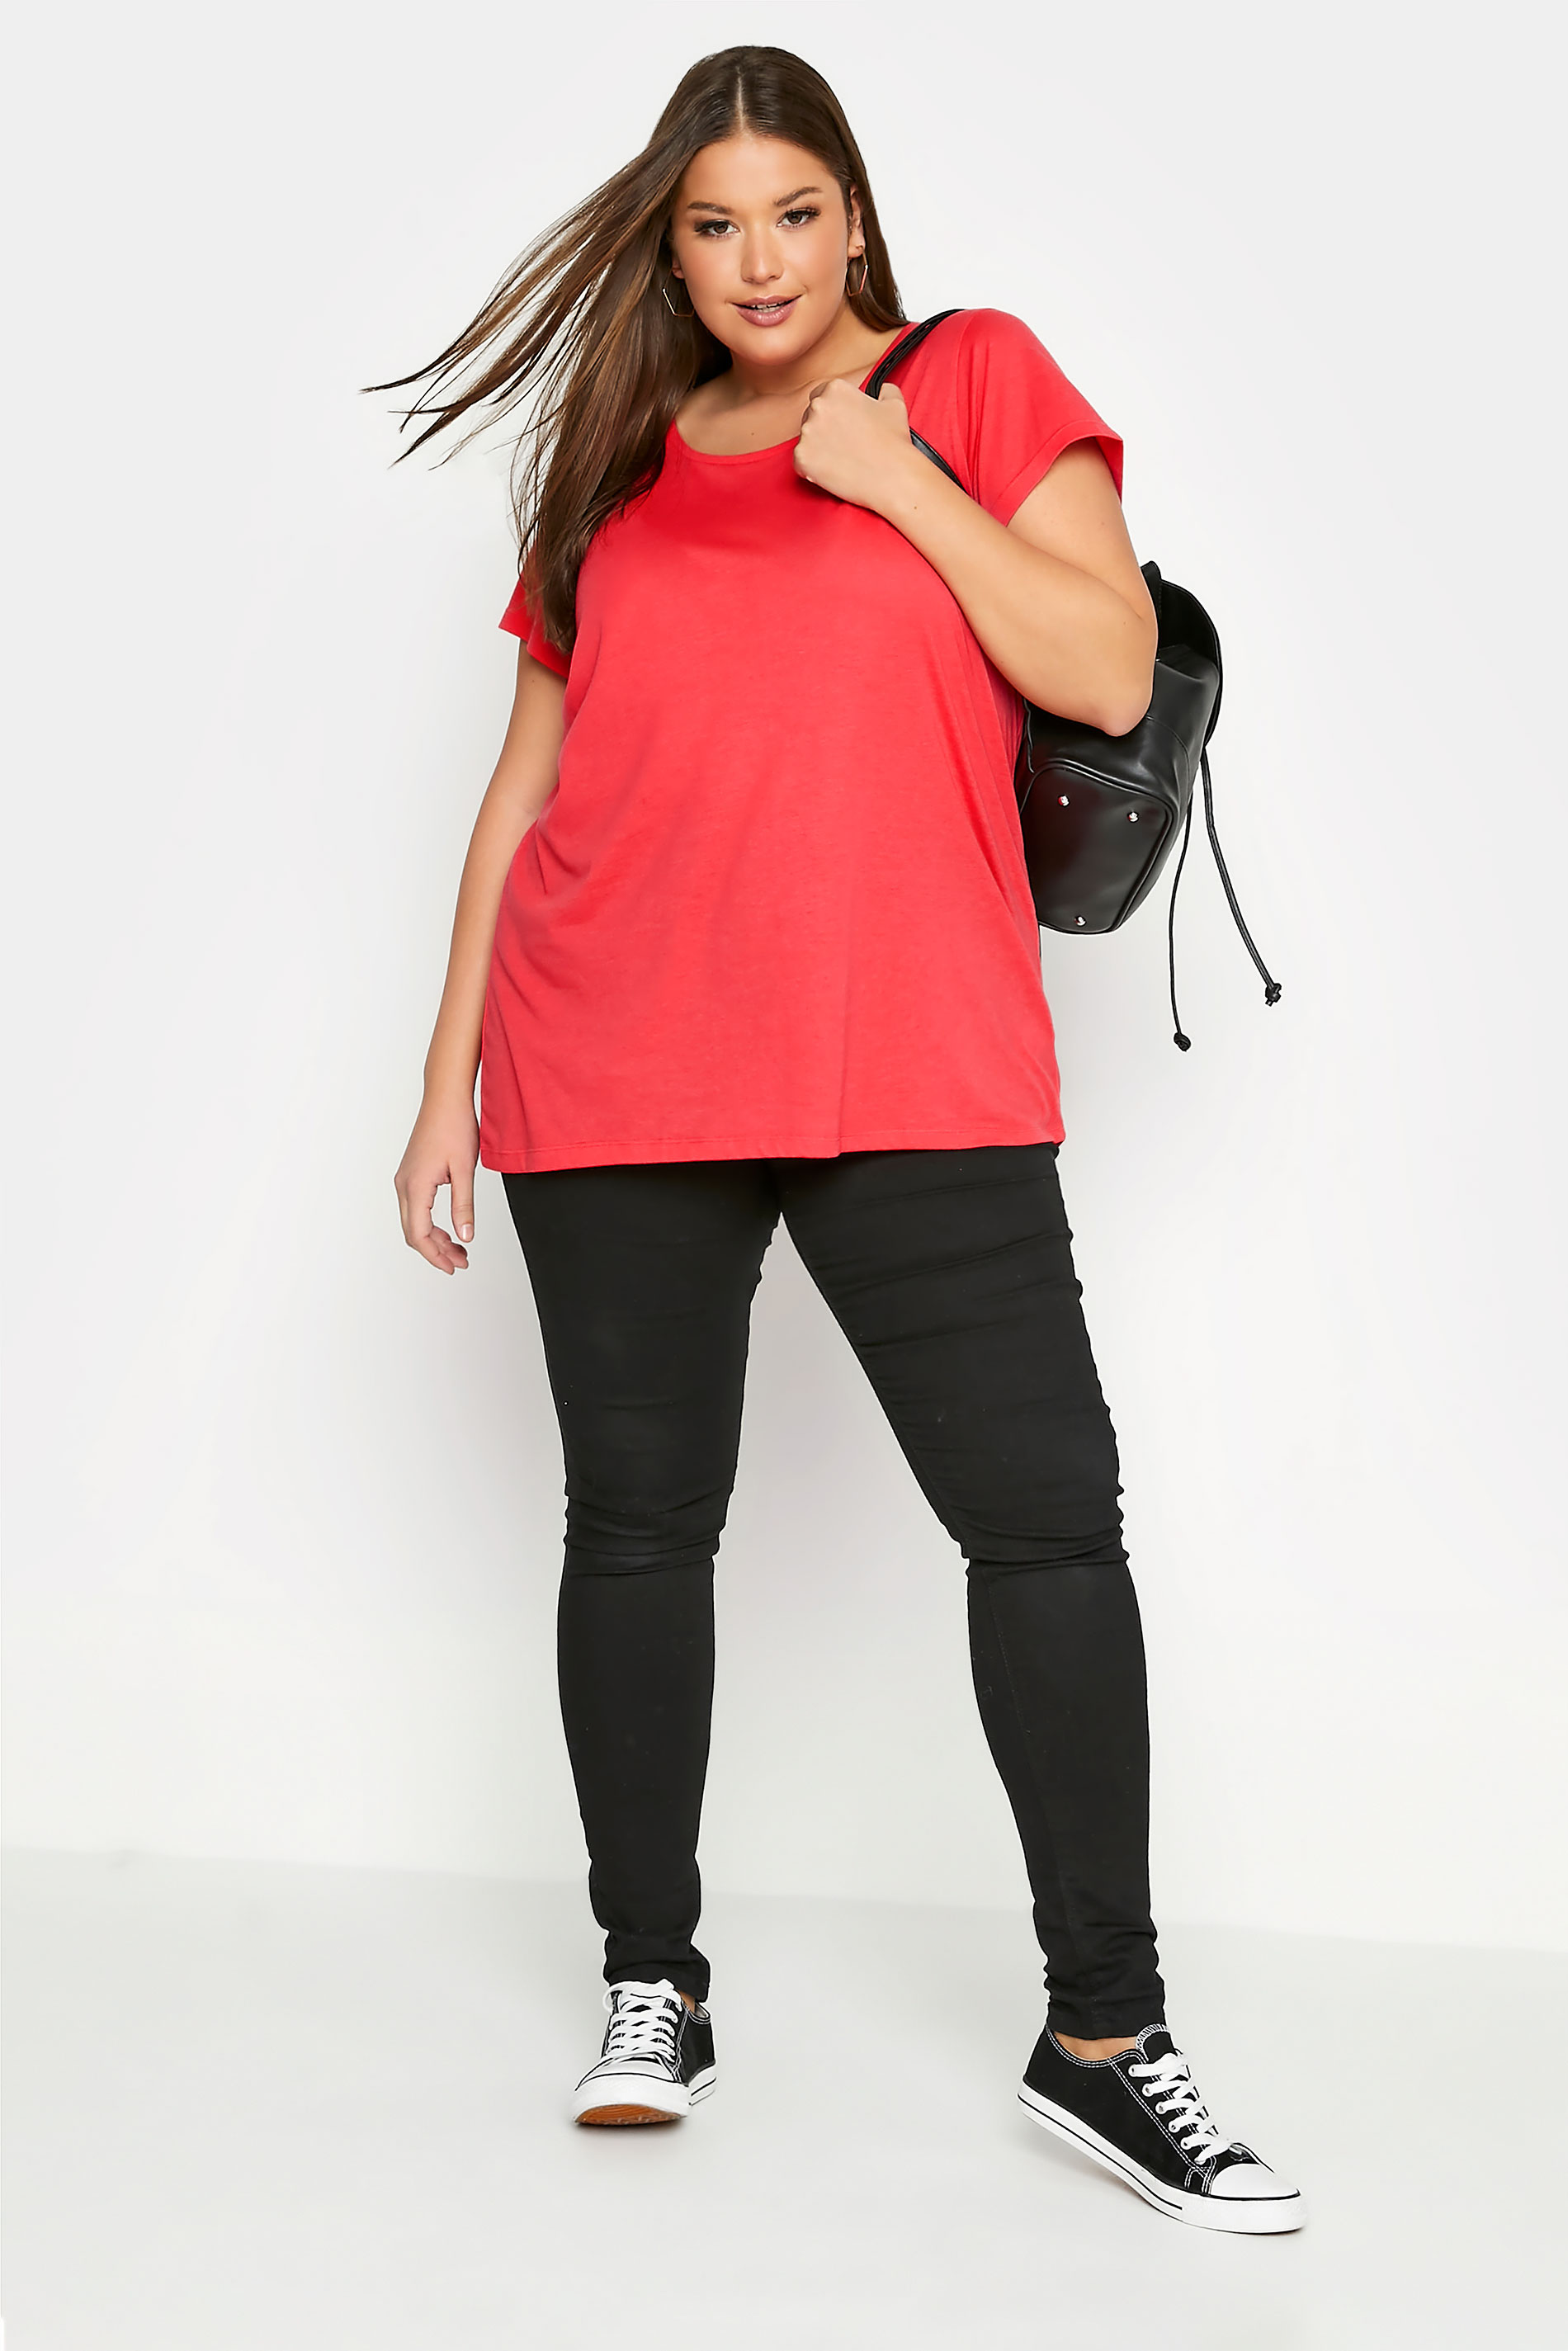 Grande taille  Tops Grande taille  T-Shirts Basiques & Débardeurs | T-Shirt Rose Corail en Jersey Manches Courtes - OQ56610